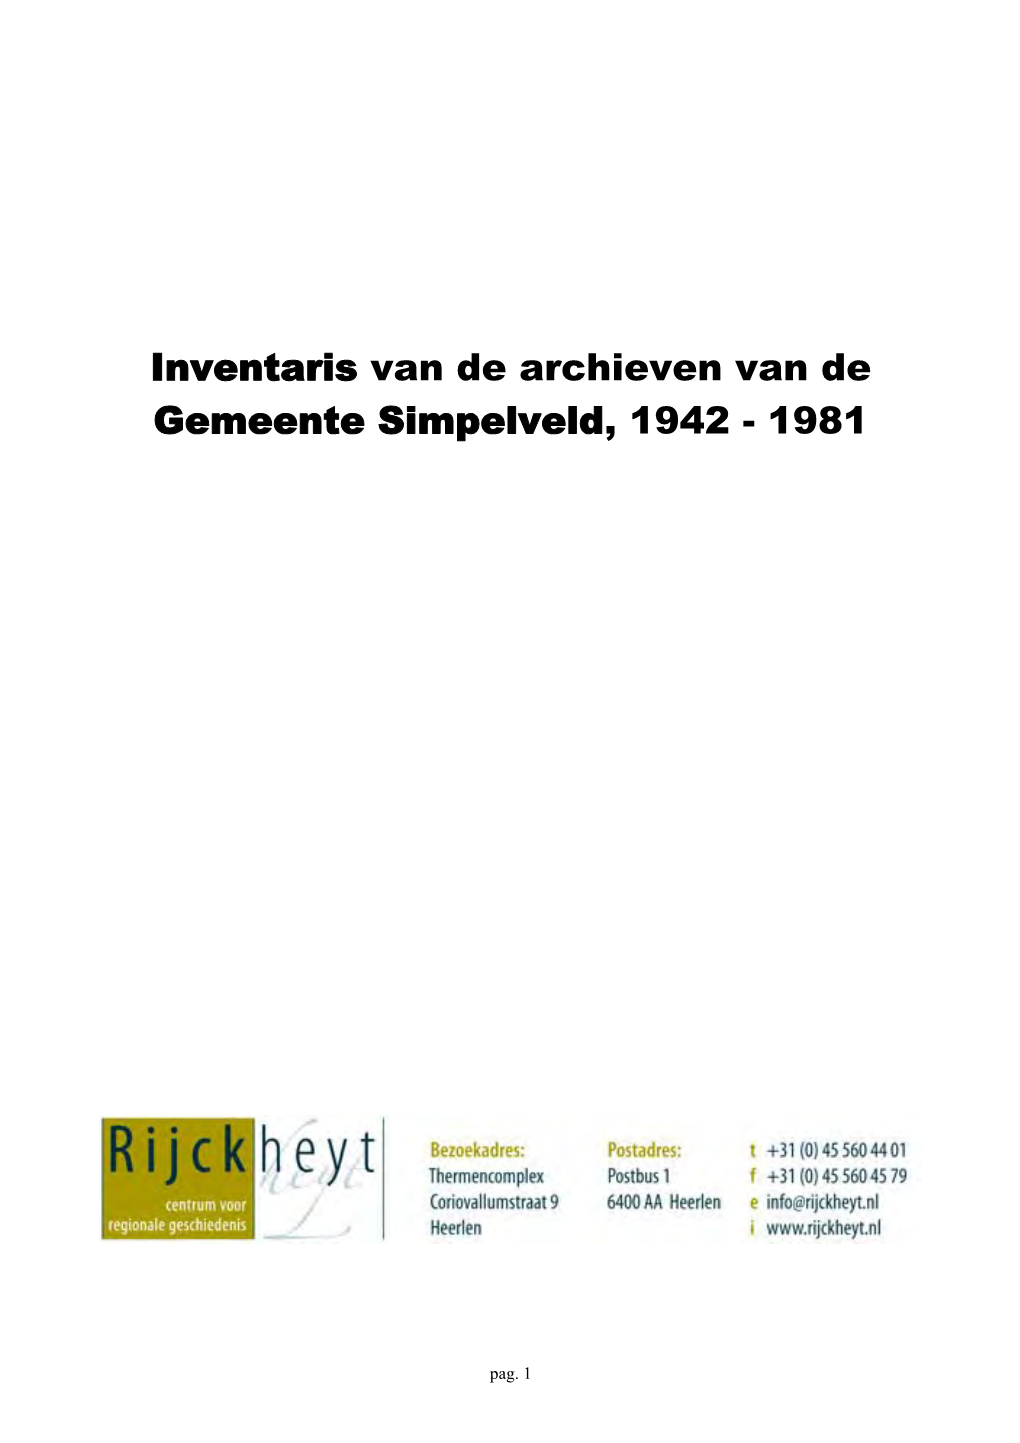 Inventaris Van De Gemeente Simpelveld, 1942